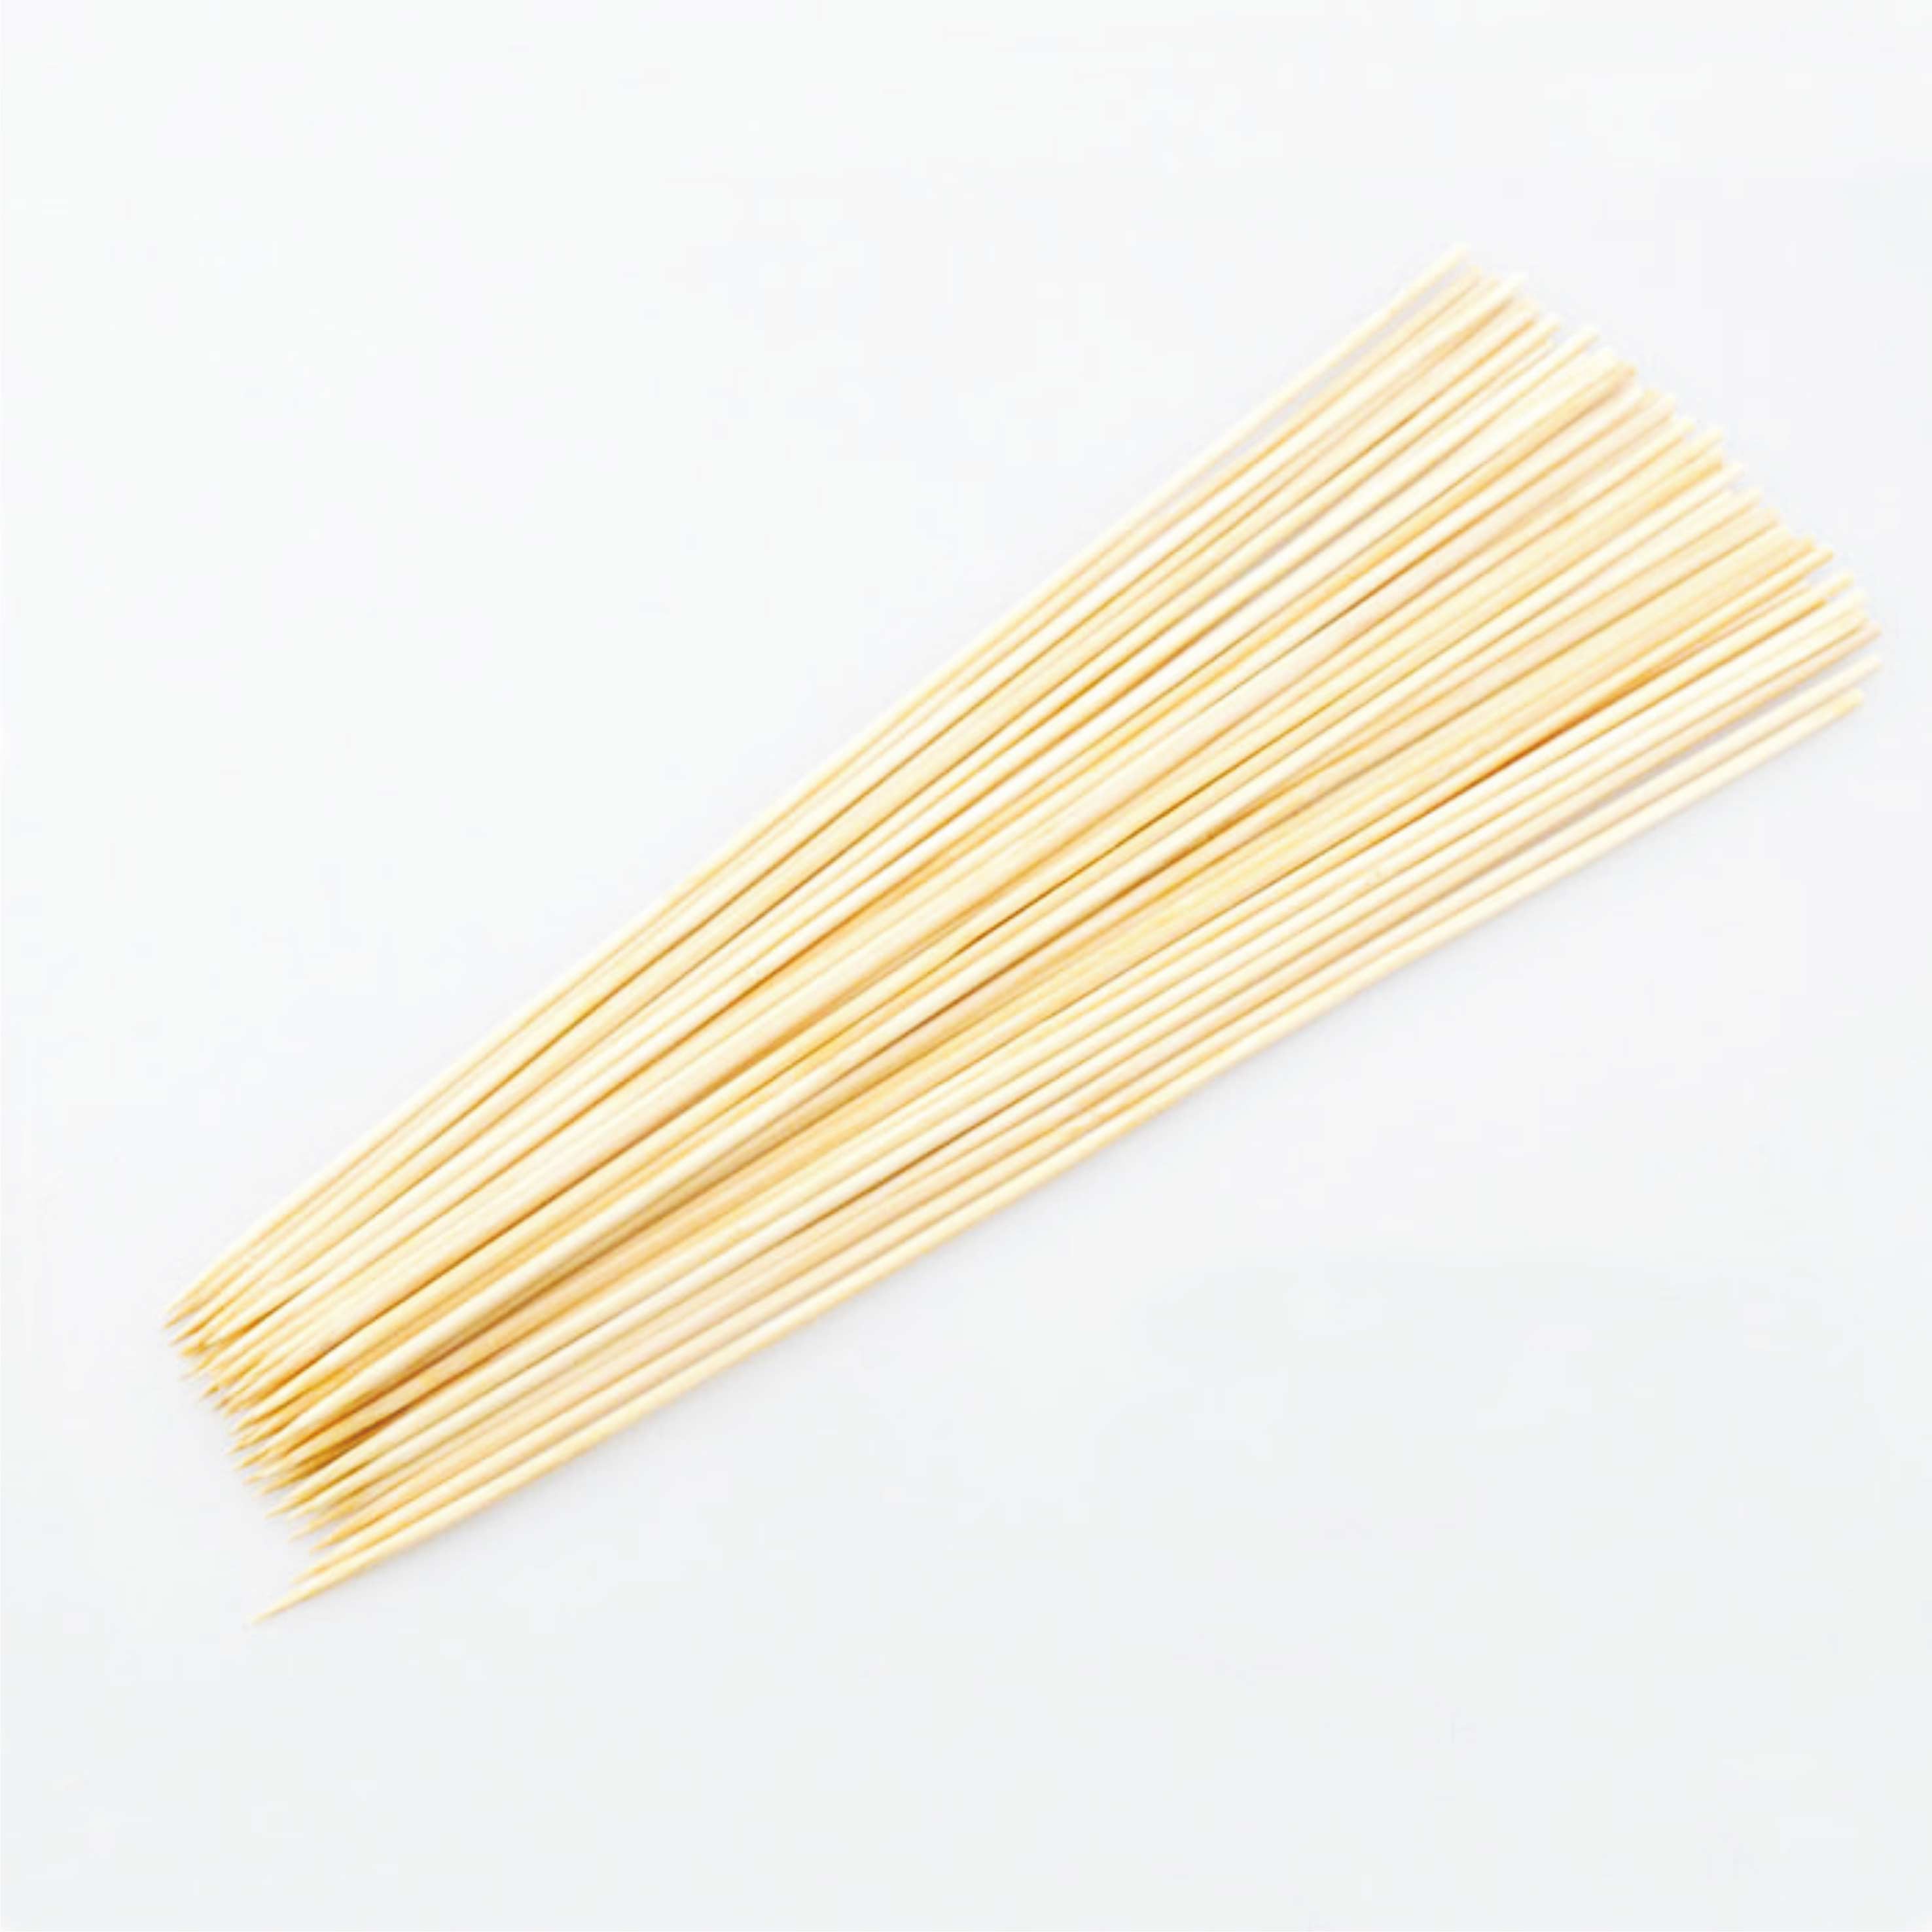 3.0mm*25cm 关中煮竹签  优质竹签 烤鱿鱼签子 串串香竹签 台湾烤肠竹签